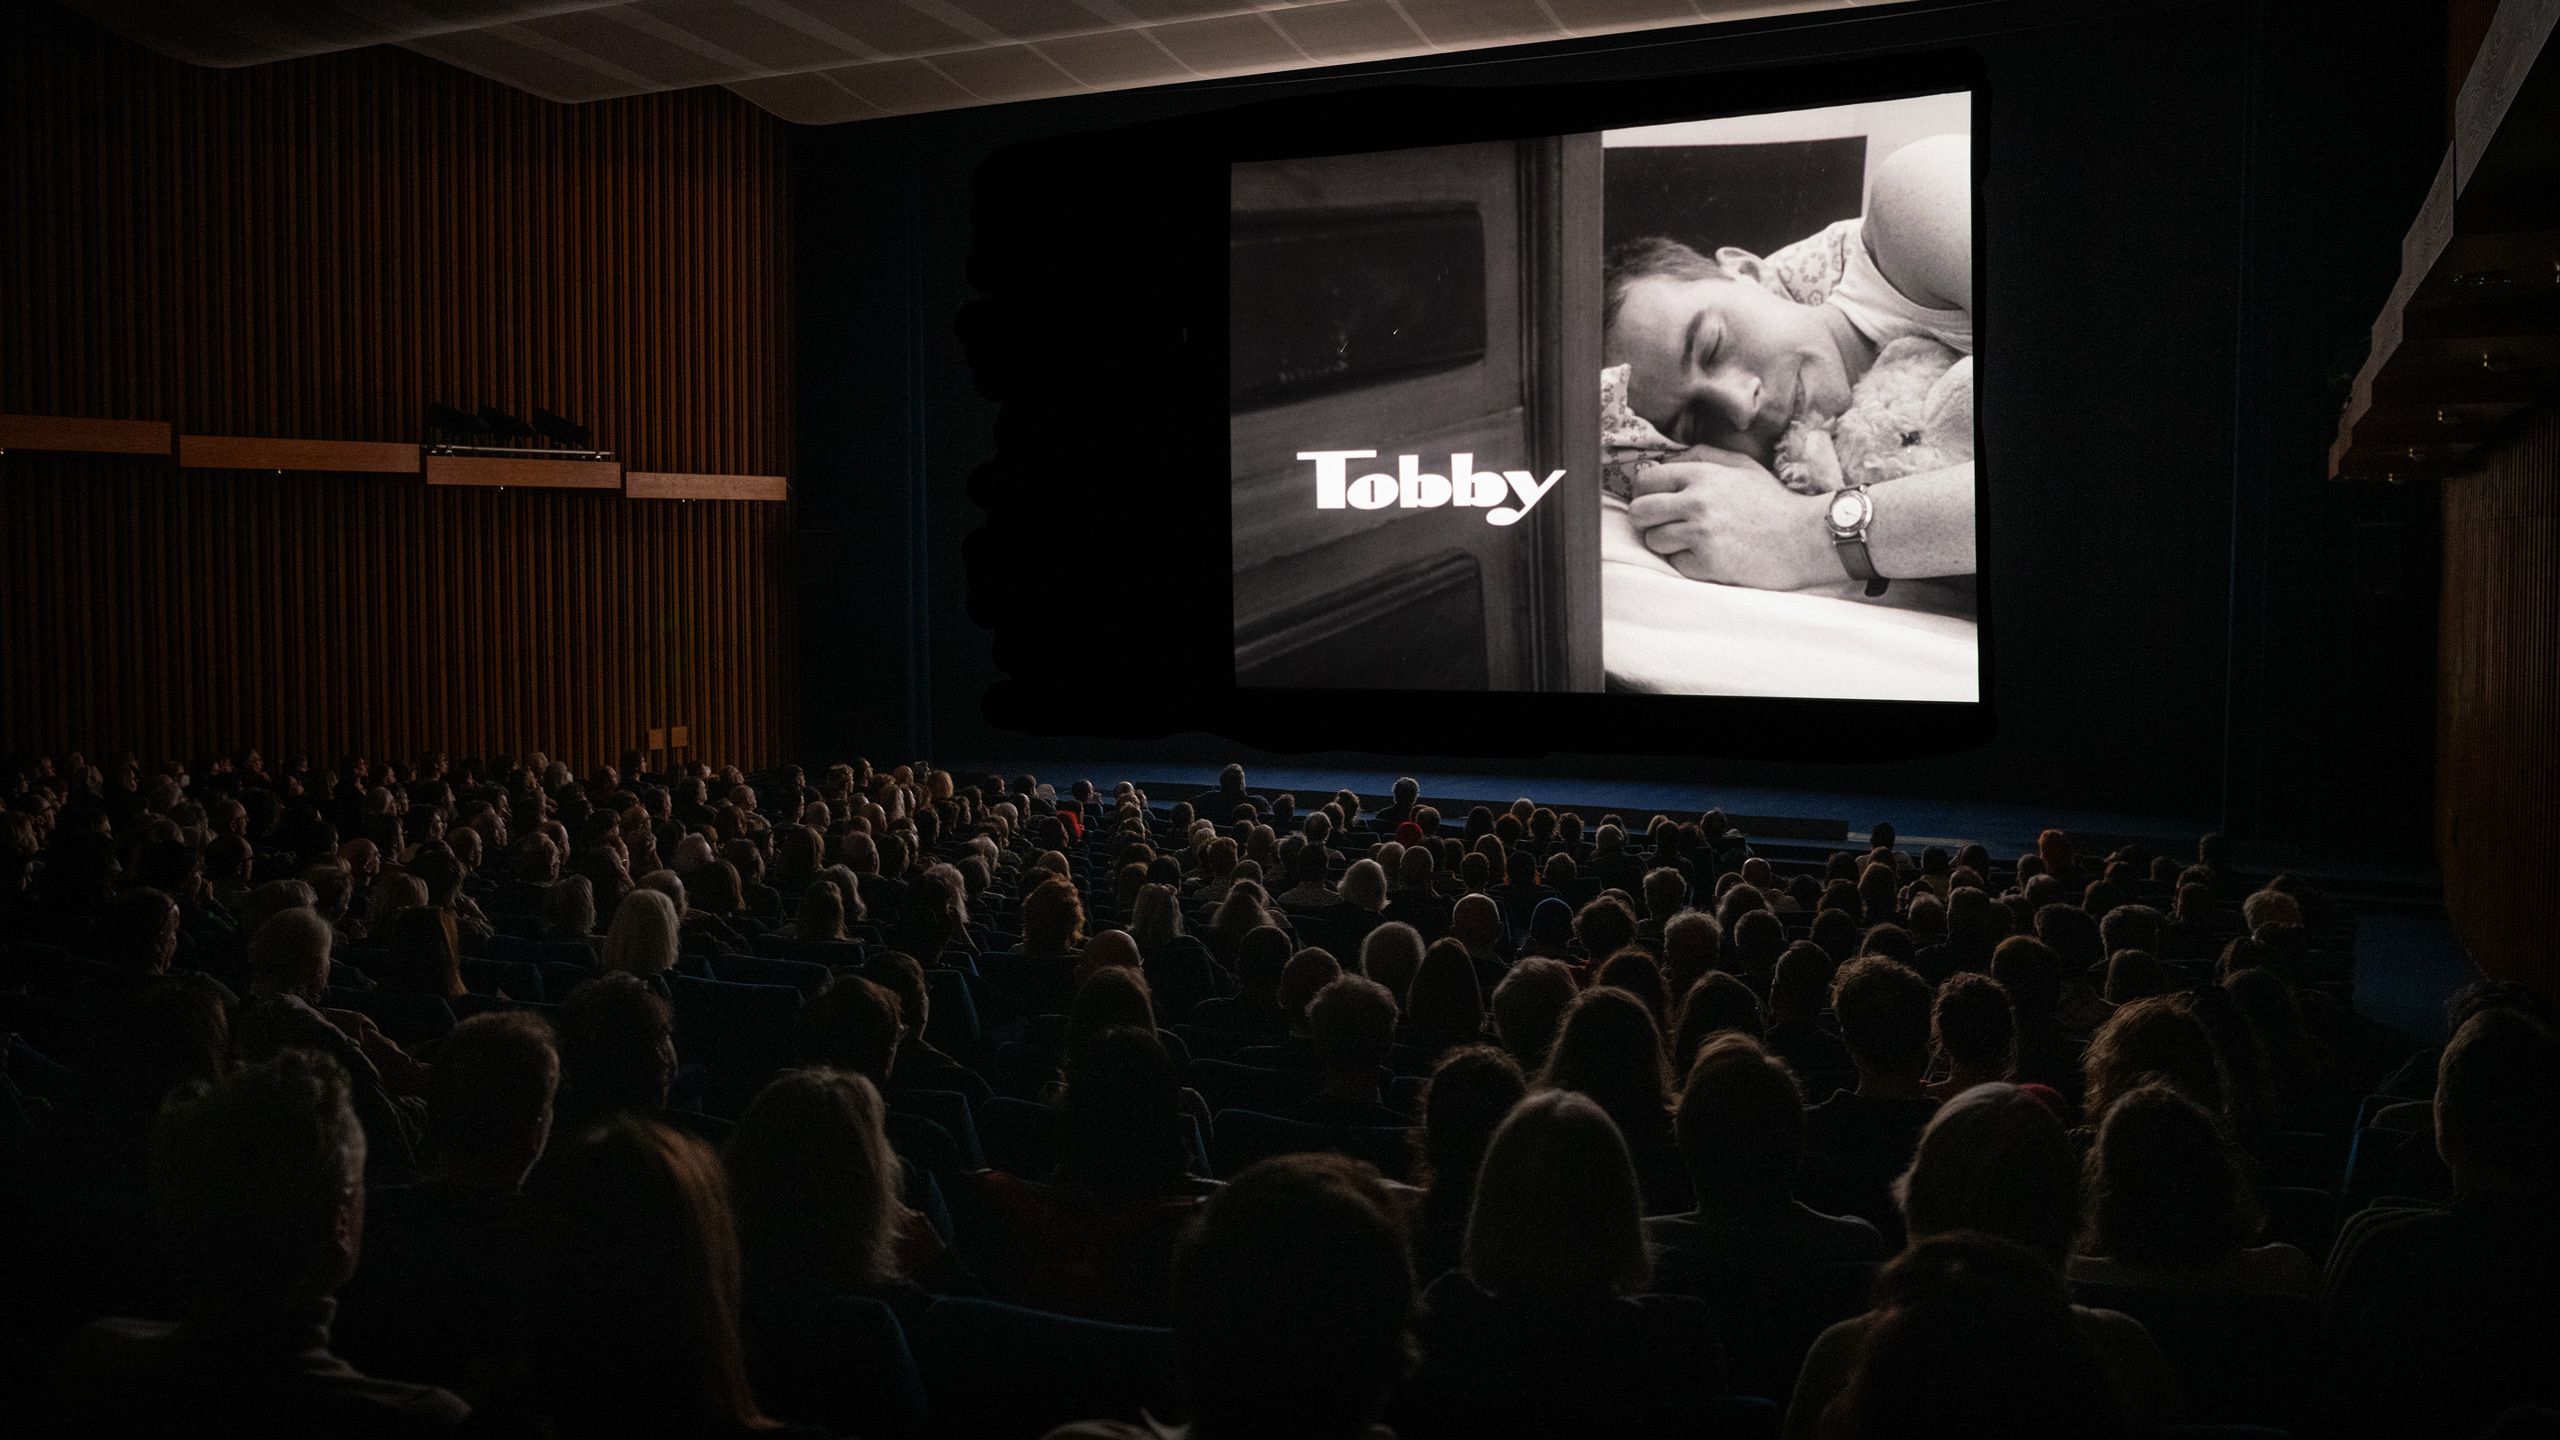 Dunkler Kinosaal: Auf der Leinwand ein schlafender Mann mit einem Teddy im Arm